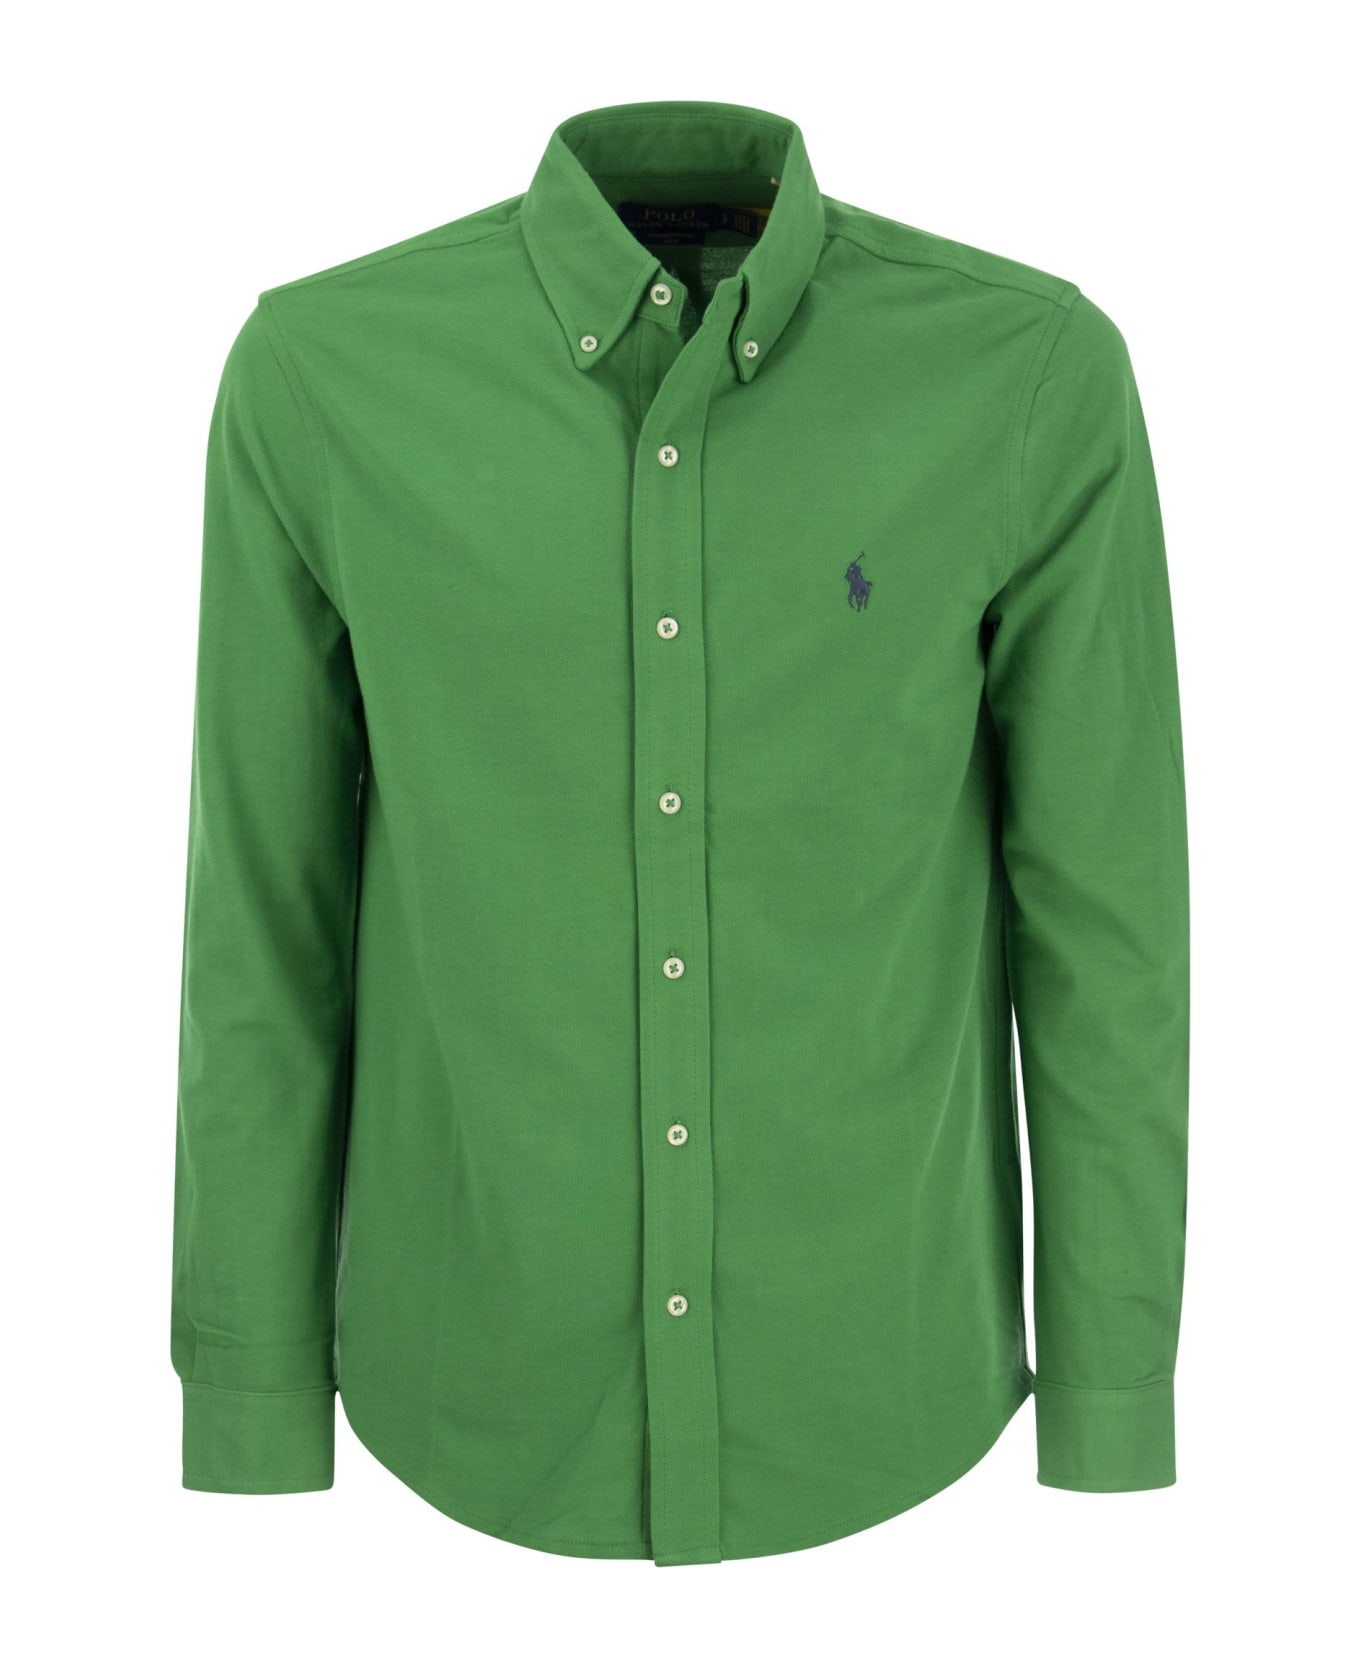 Polo Ralph Lauren Ultralight Pique Shirt - Green シャツ